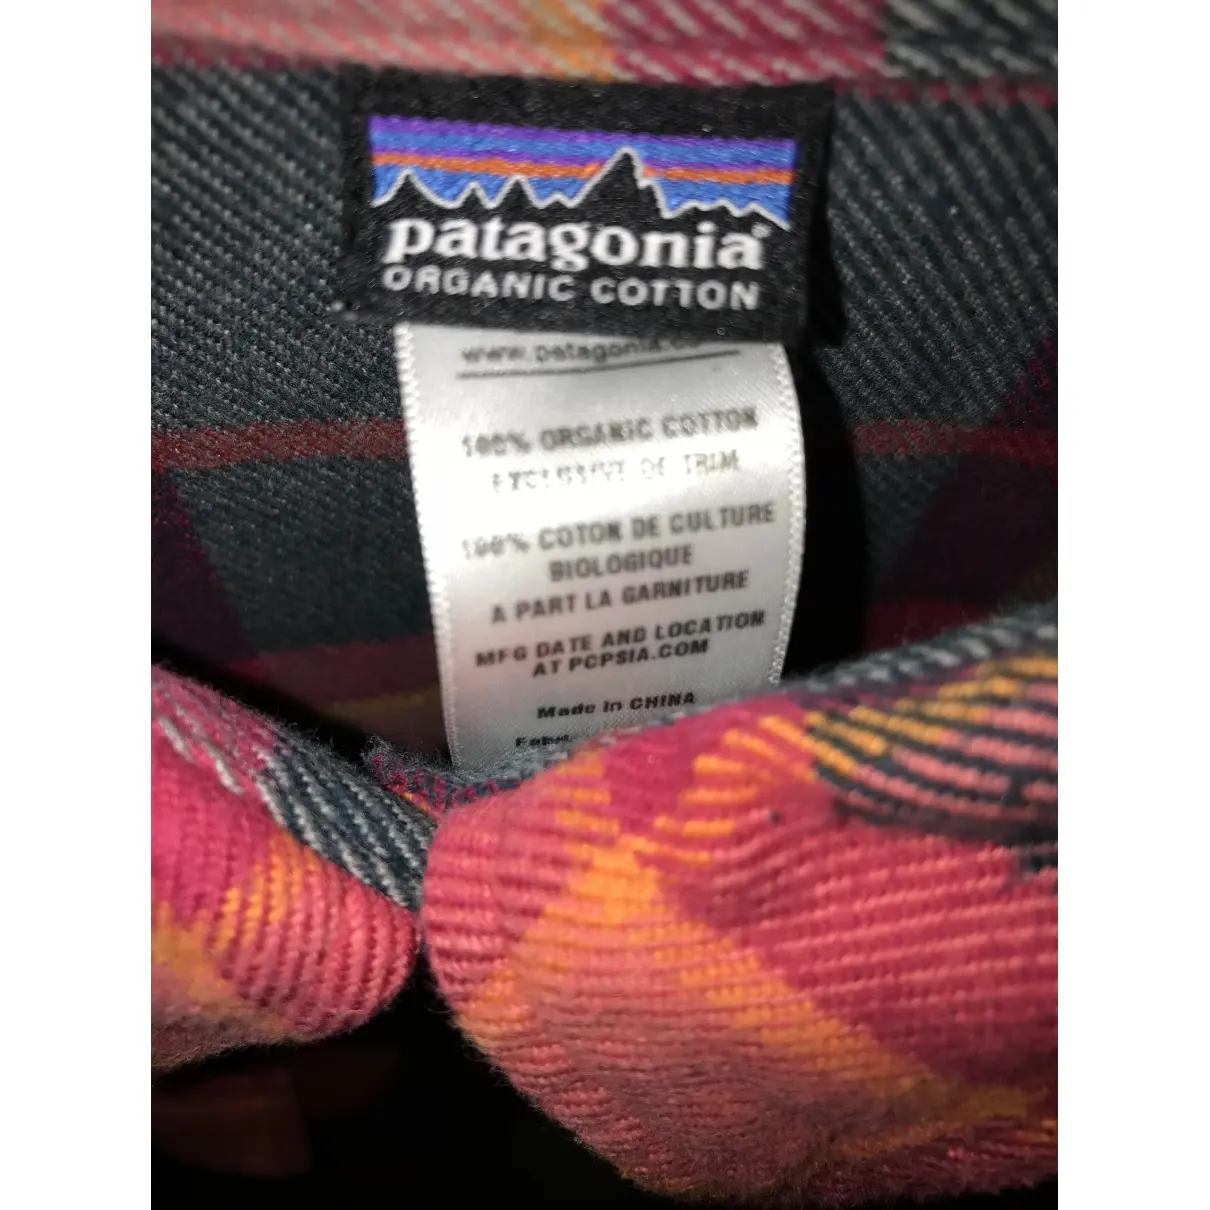 Buy Patagonia Shirt online